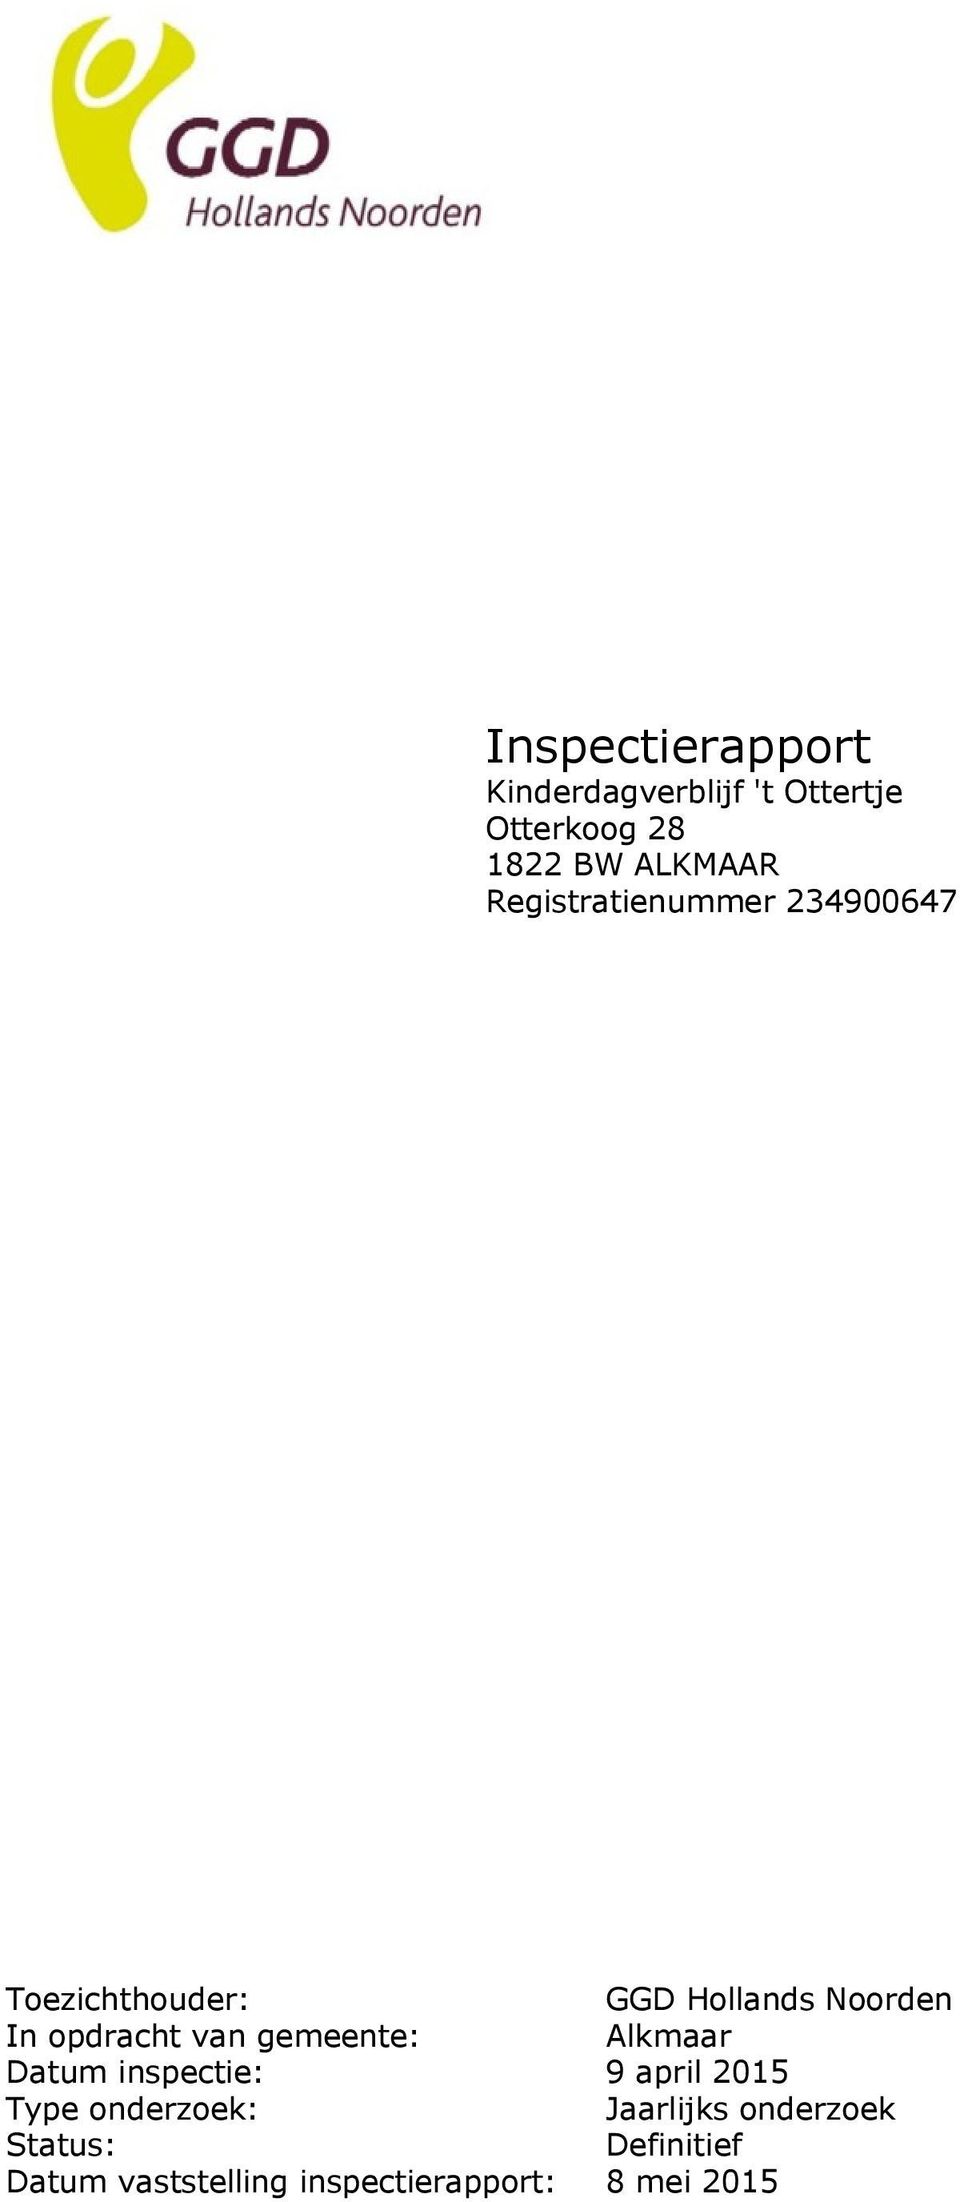 van gemeente: Alkmaar Datum inspectie: 9 april 2015 Type onderzoek: